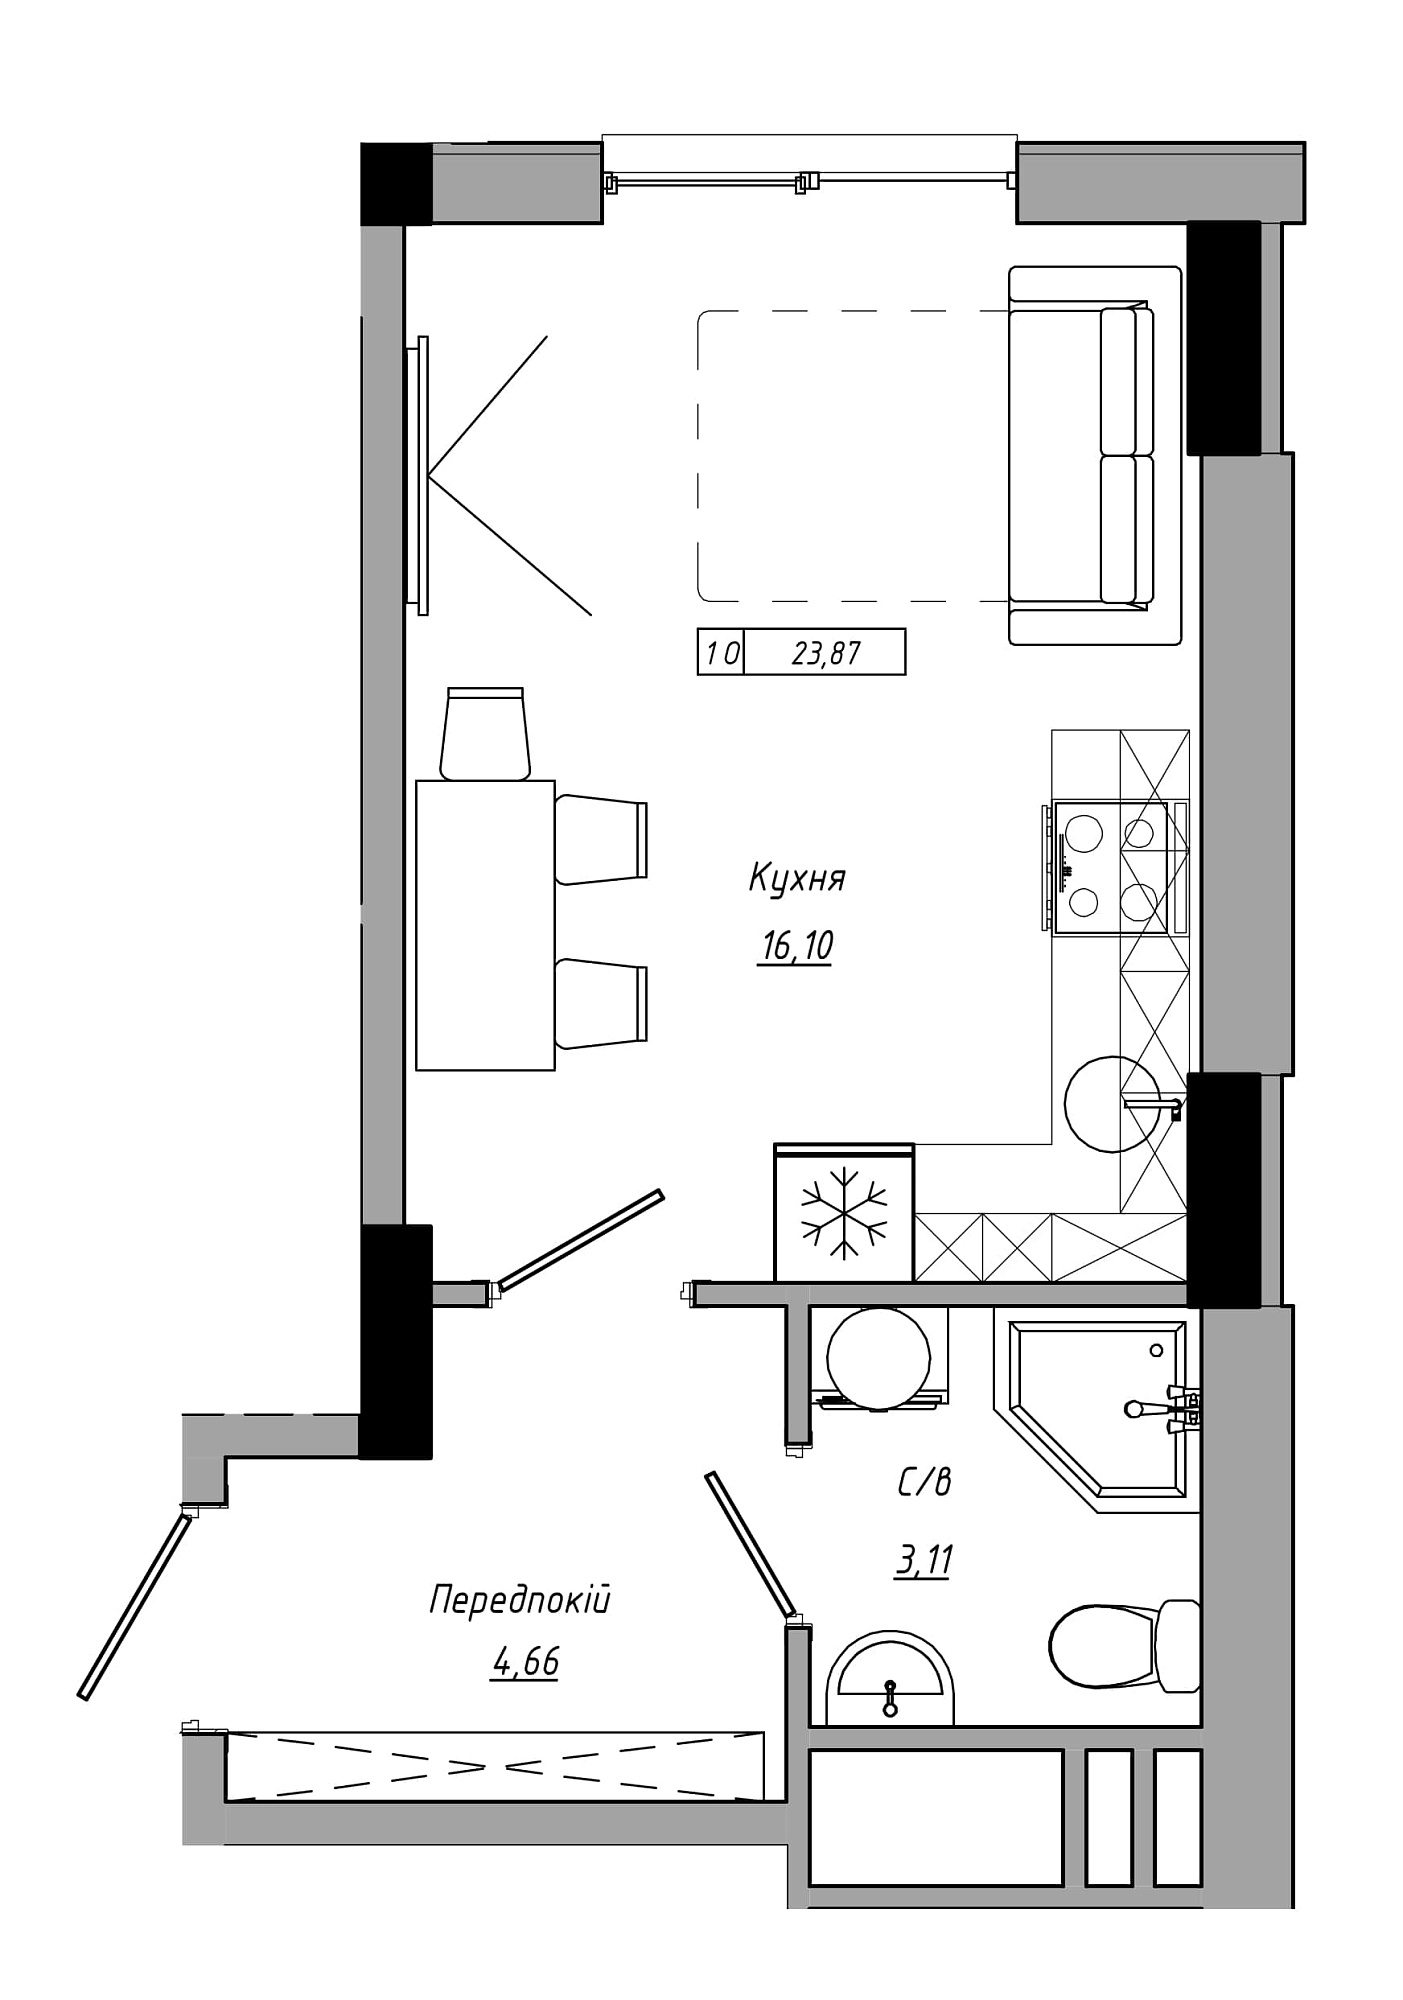 Планування Smart-квартира площею 23.87м2, AB-21-07/00017.